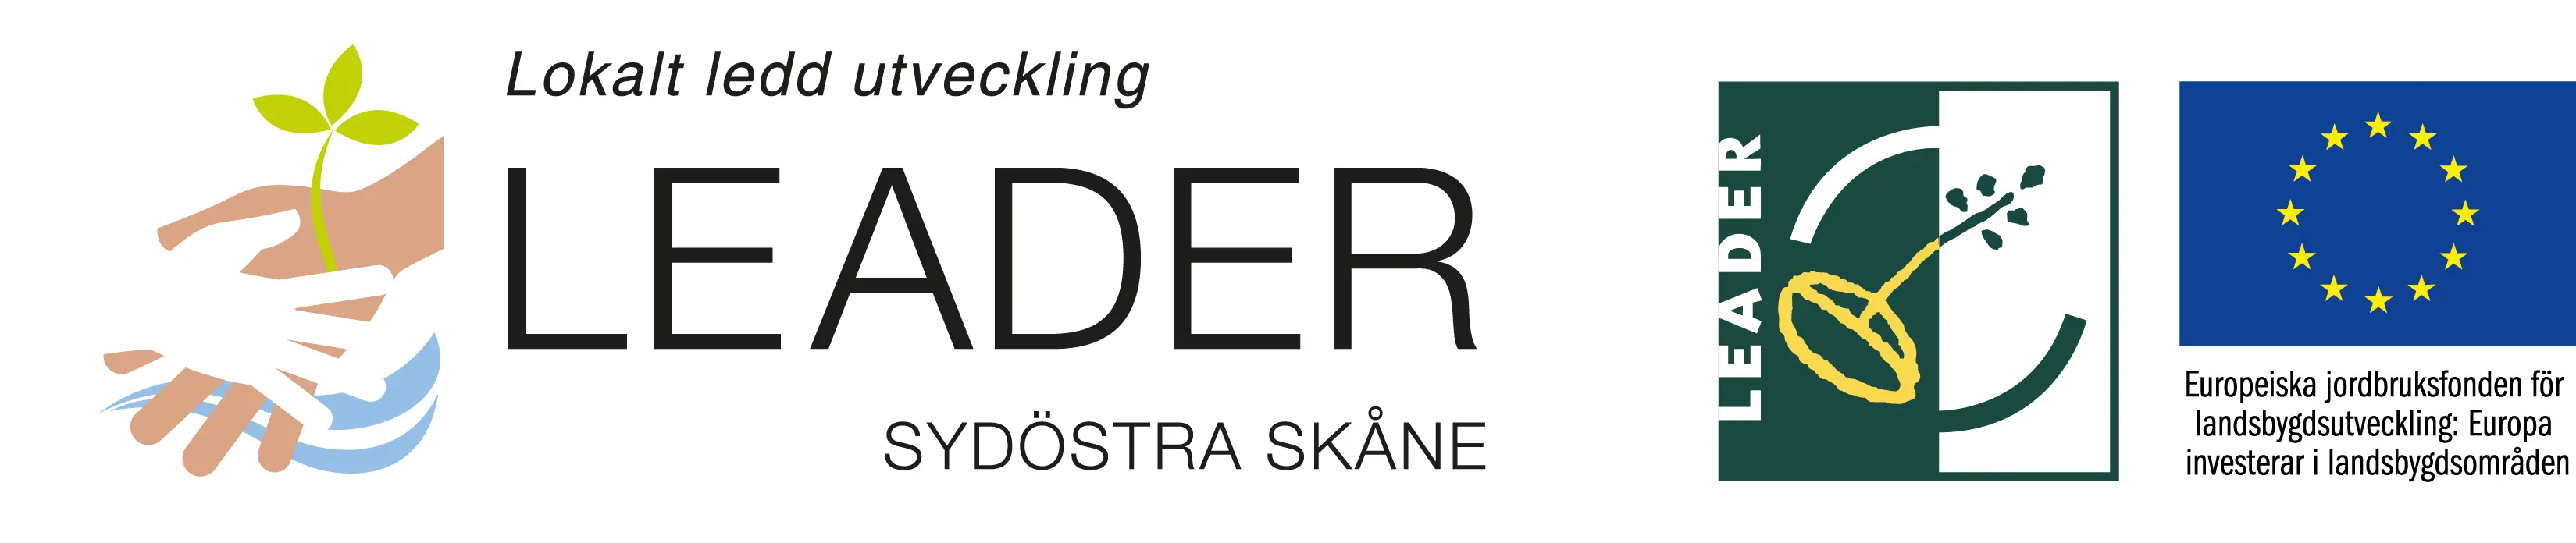 Logotyp för: Leader (lokalt ledd utveckling) Sydöstra Skåne. samt EU:s flagga med texten Europeiska jordbruksfonden för landsbygdsutveckling.